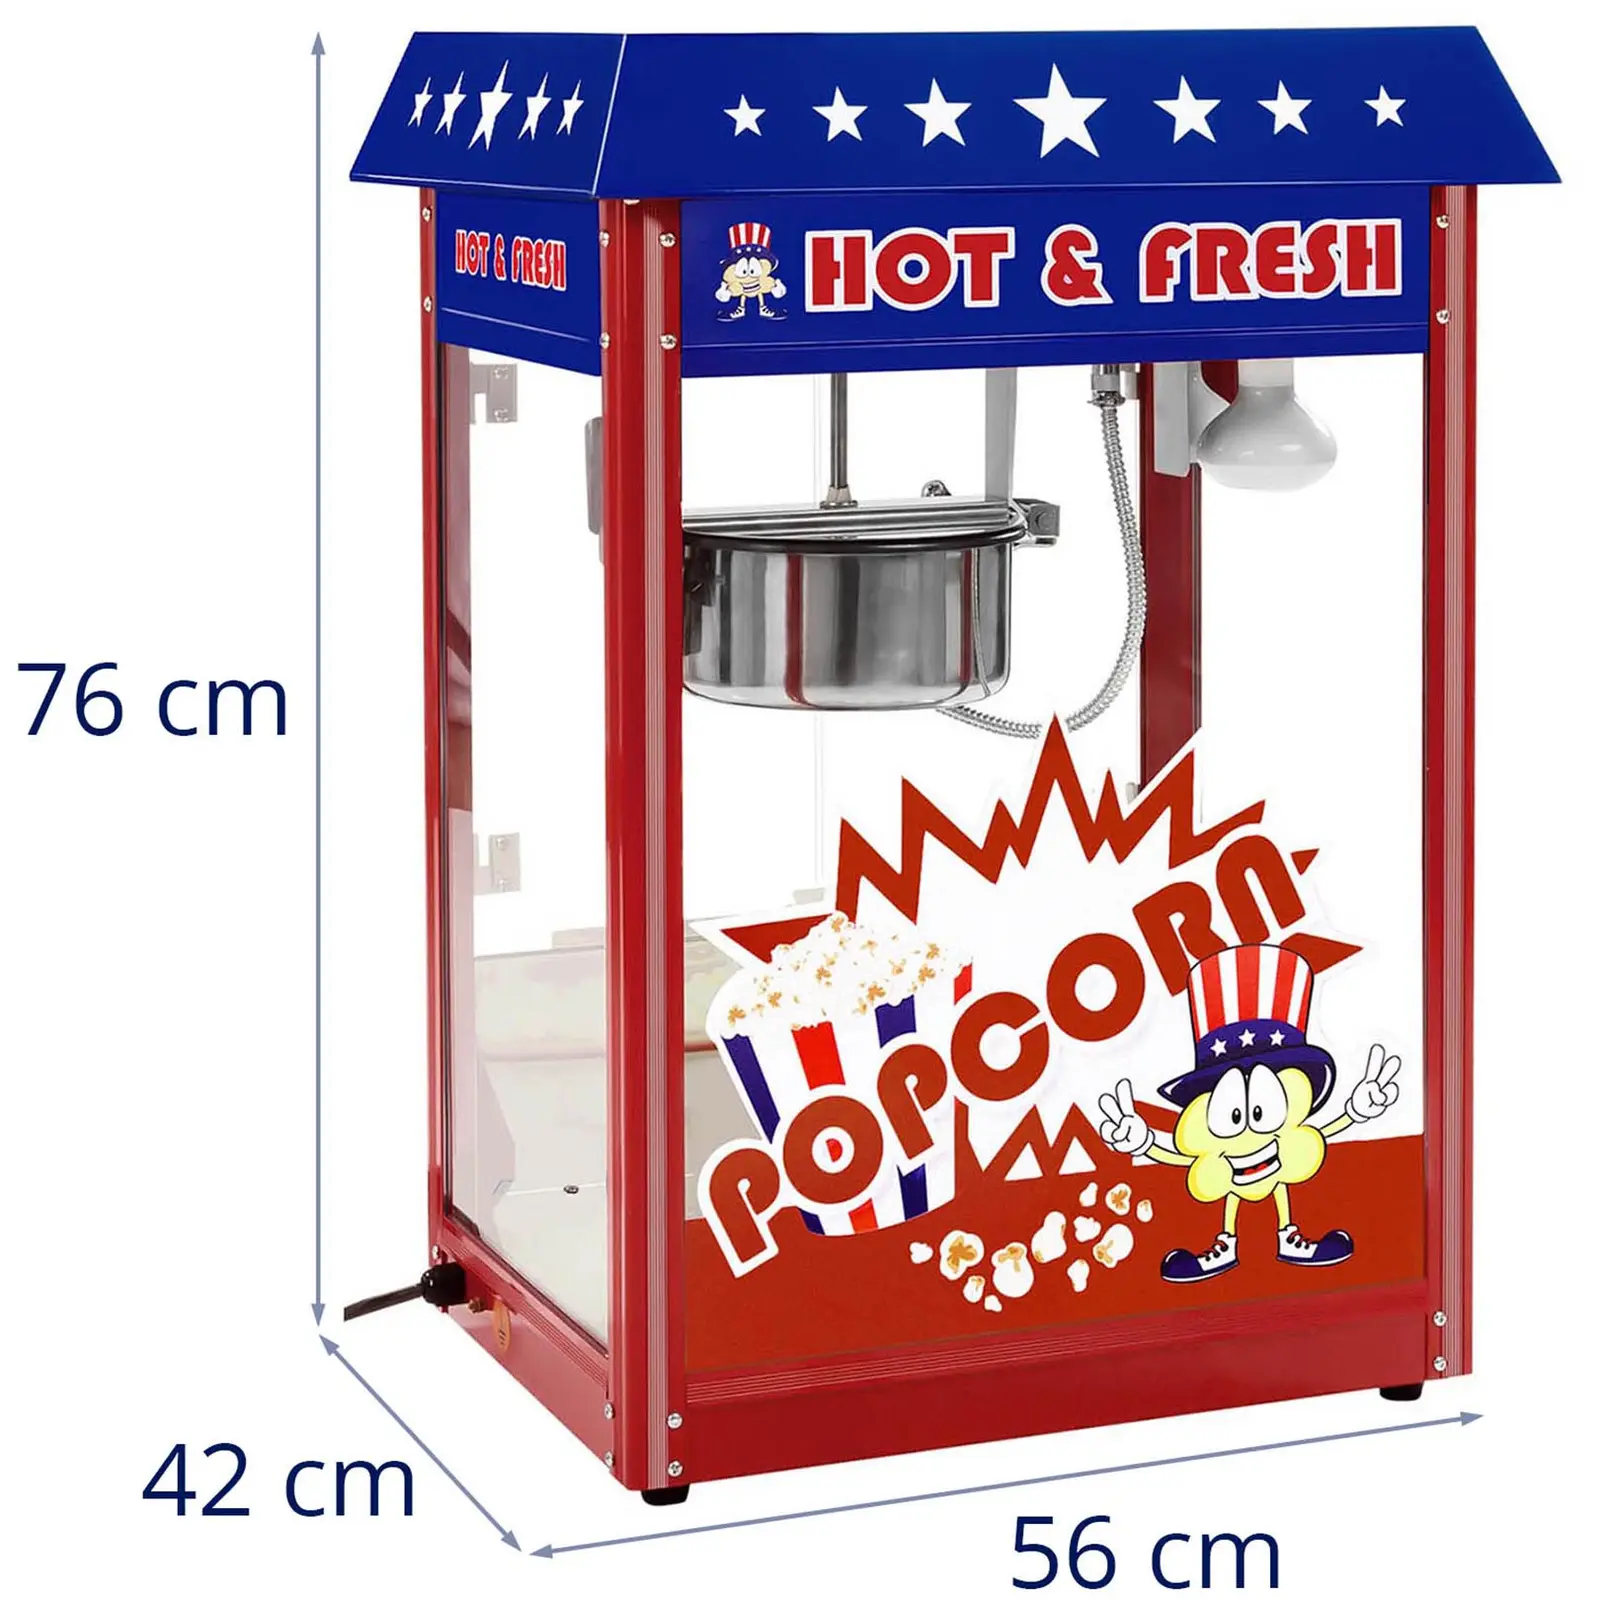 Macchina per popcorn – Design americano